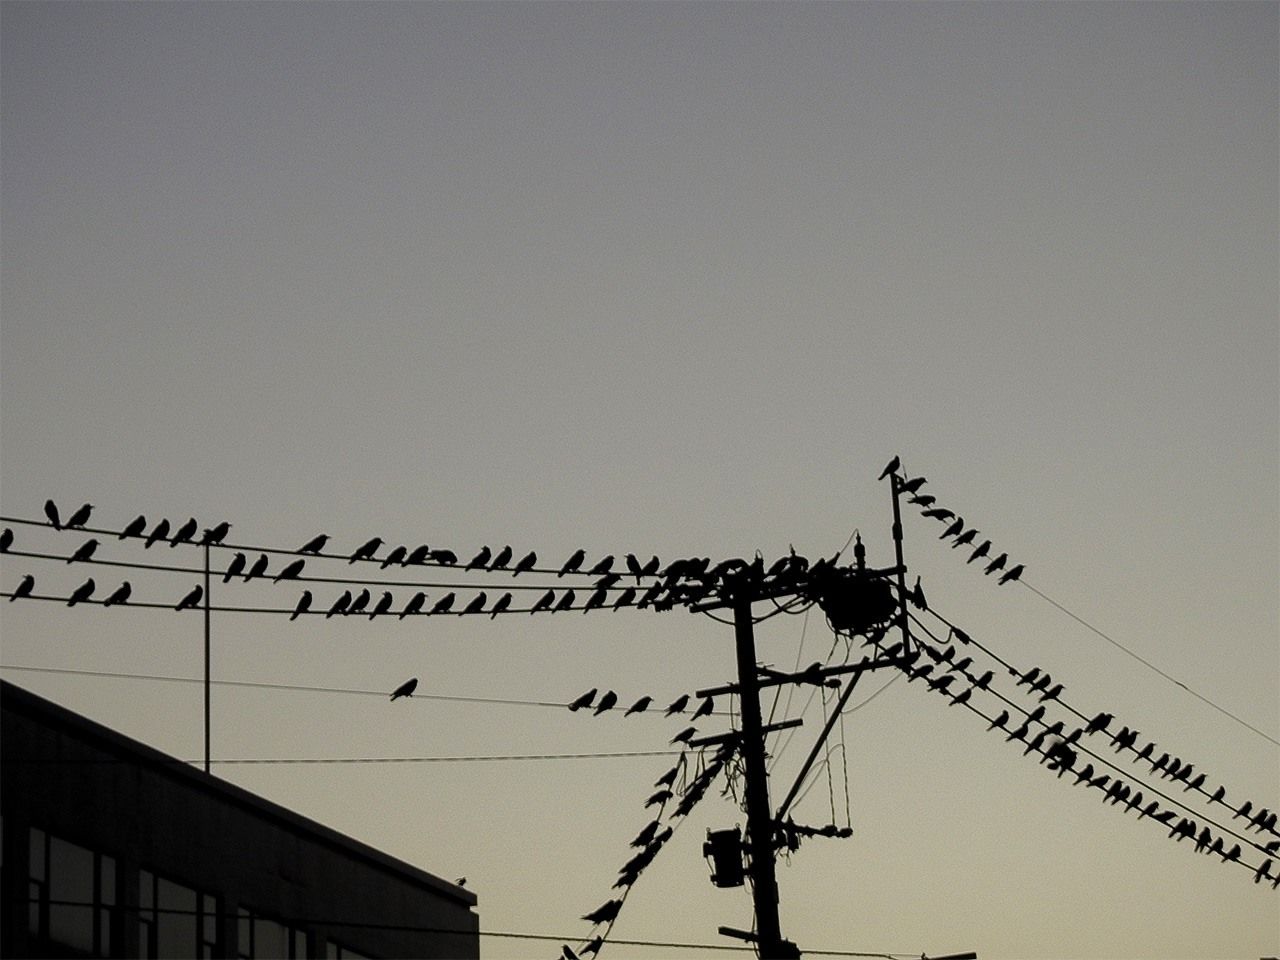 Colonia de cuervos instalada en los cables eléctricos de la calle. El suelo está lleno de excrementos.